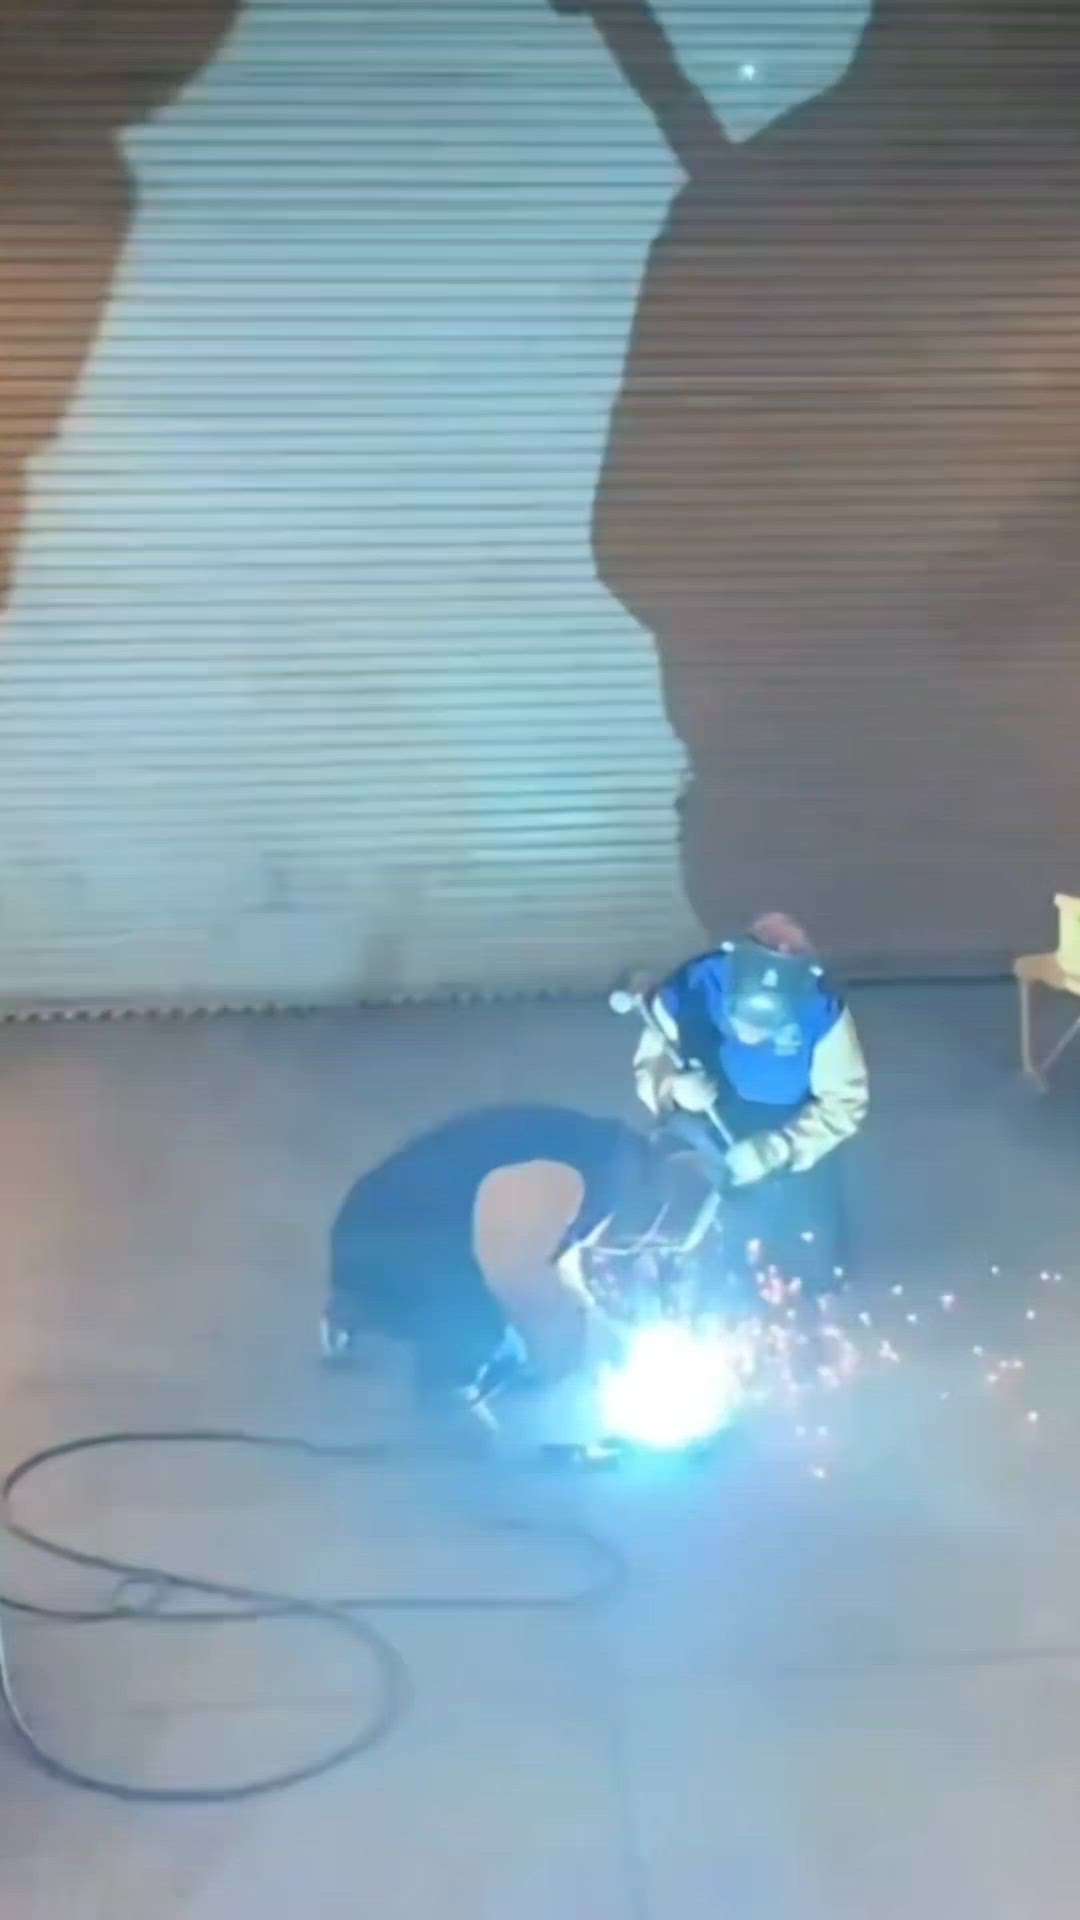 welder boy's..👉☎️any work 🙏
Bismillah fabrication welding work
.
.
 #kolotrending  #welderslife  #welderhack  #Weldingwork  #koliarchworld  #kolopost  #koloindial  #koloapp  #kolorsworld